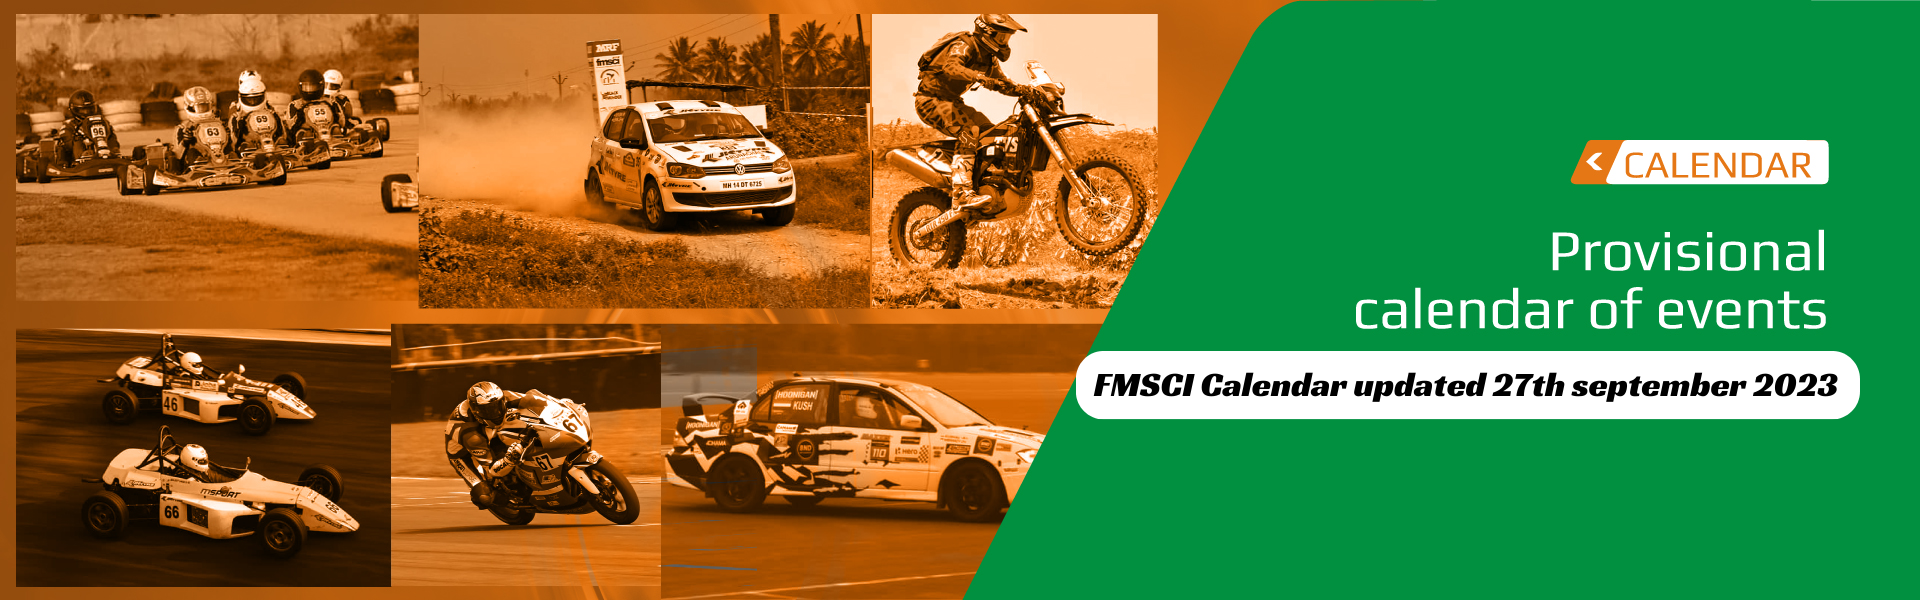 FMSCI-Calendar-updated-2-1